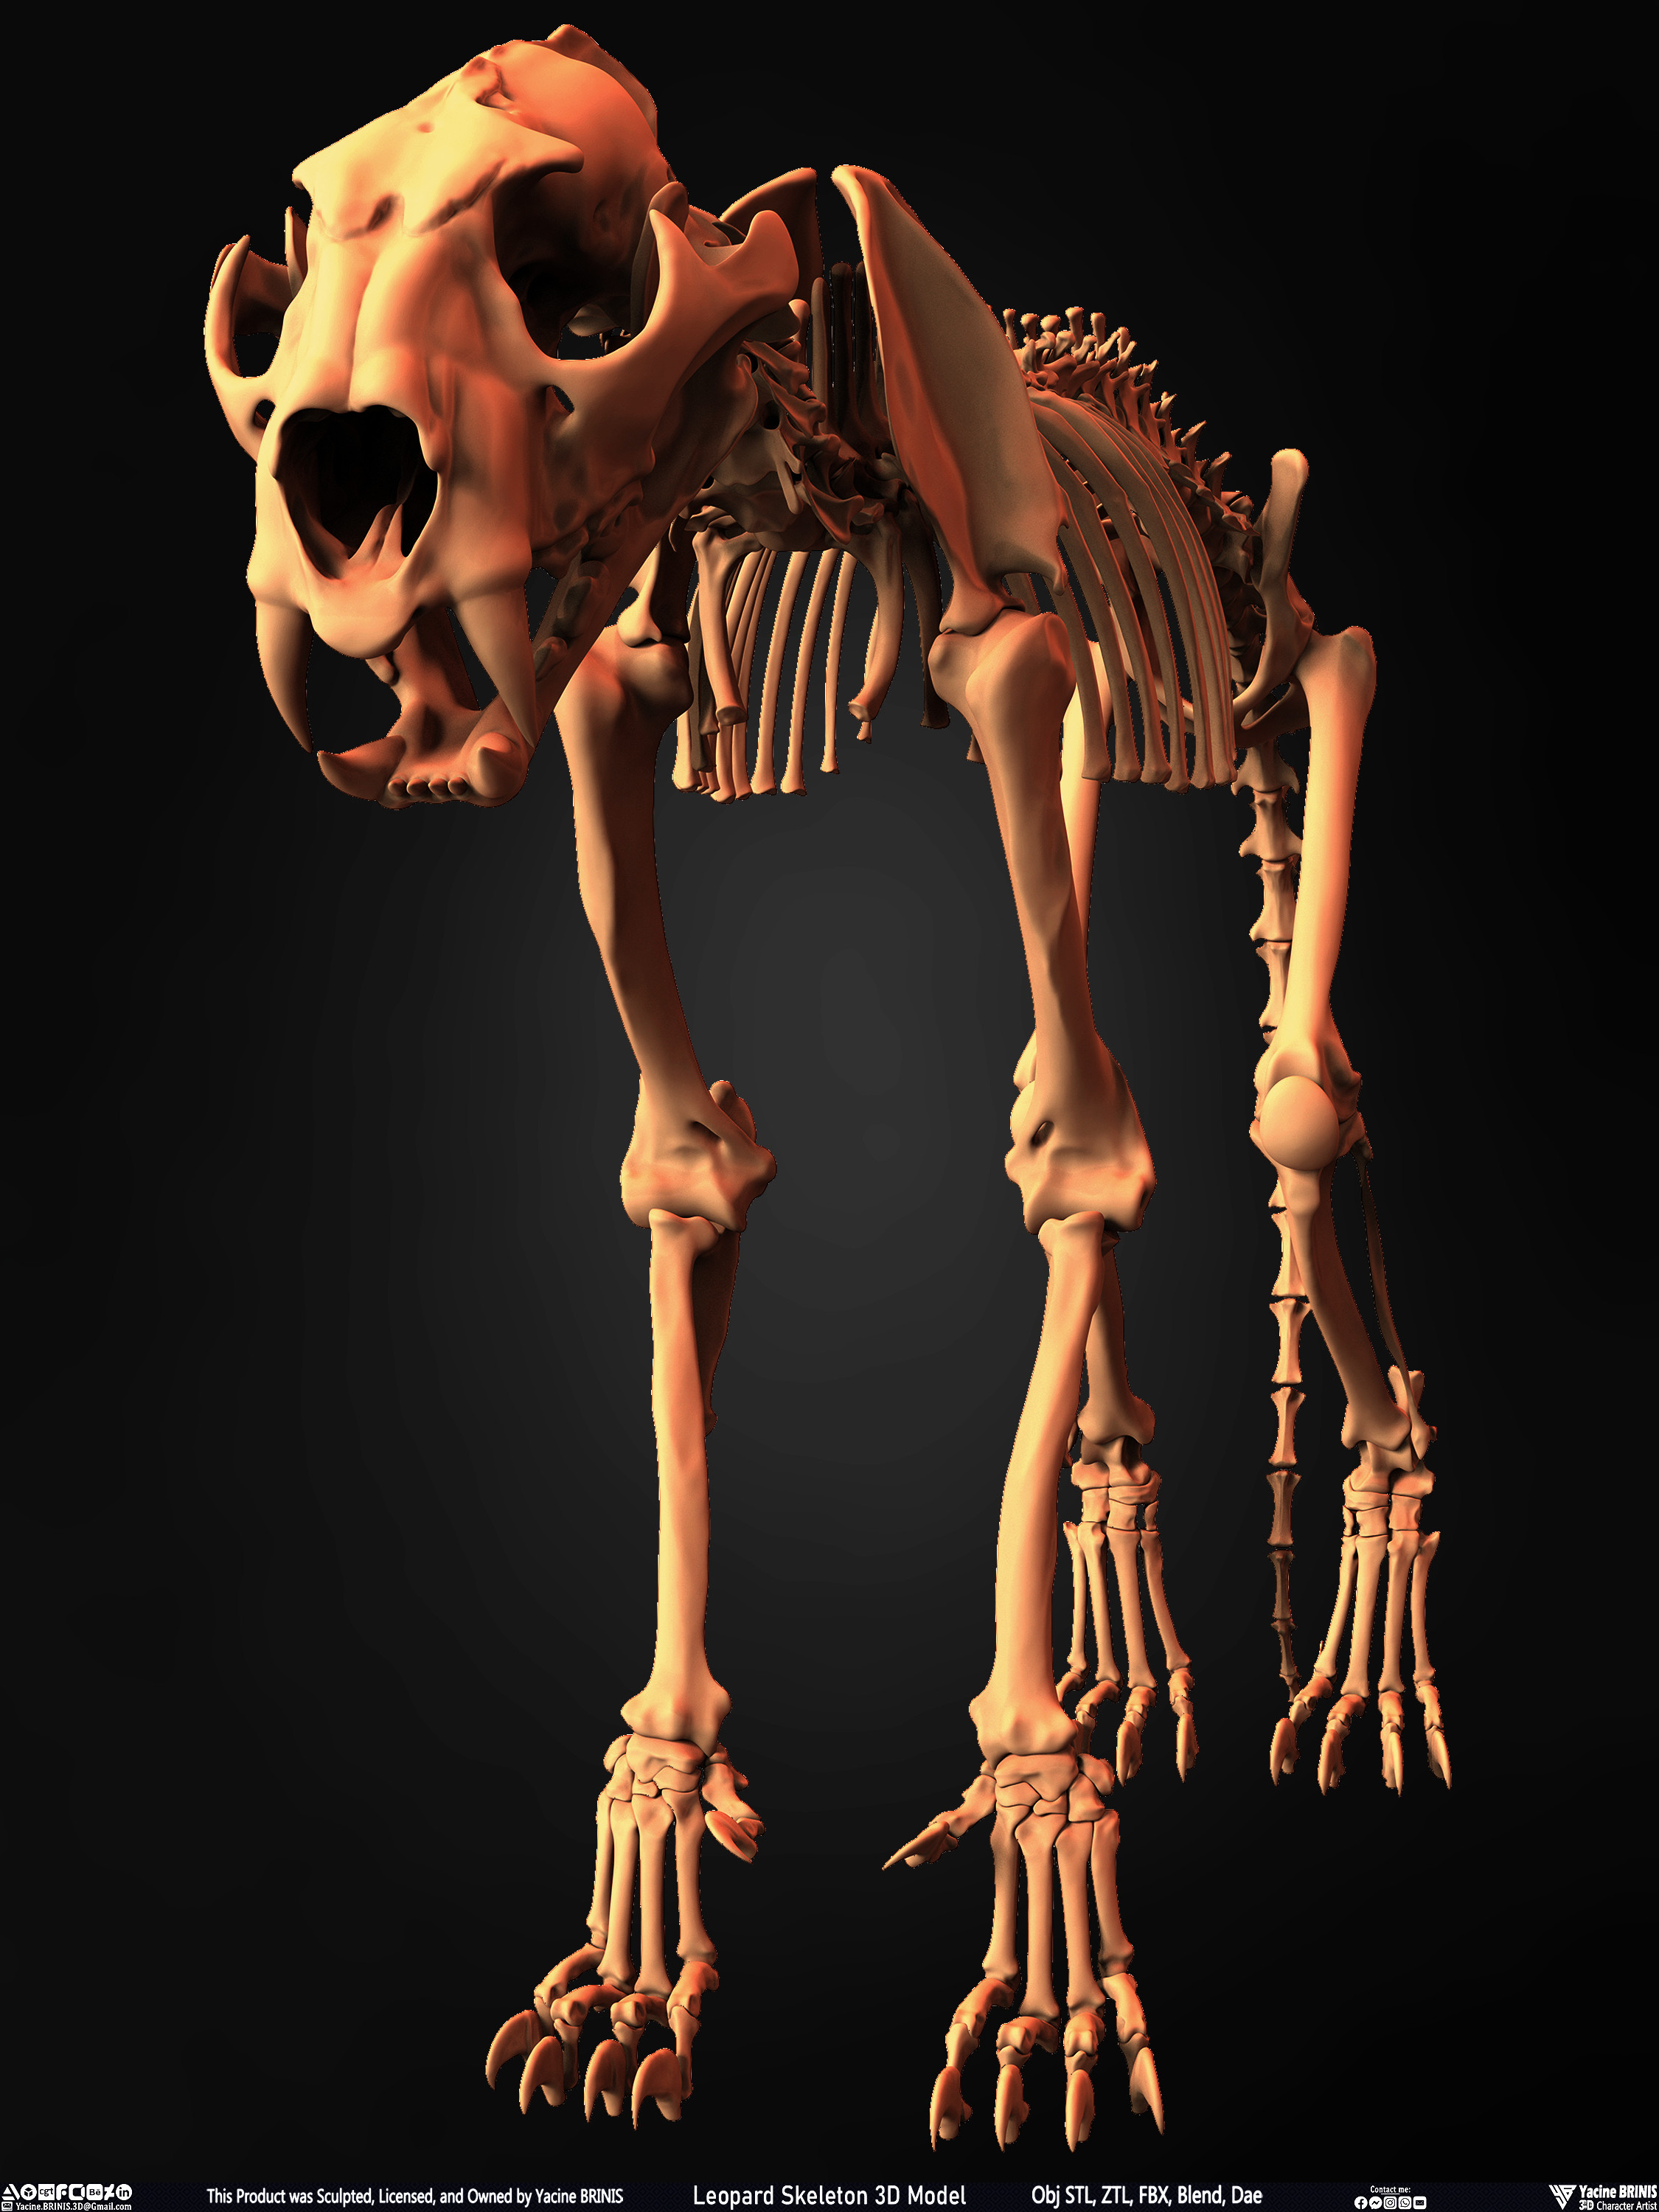 Leopard Skeleton 3D Model Sculpted By Yacine BRINIS 006